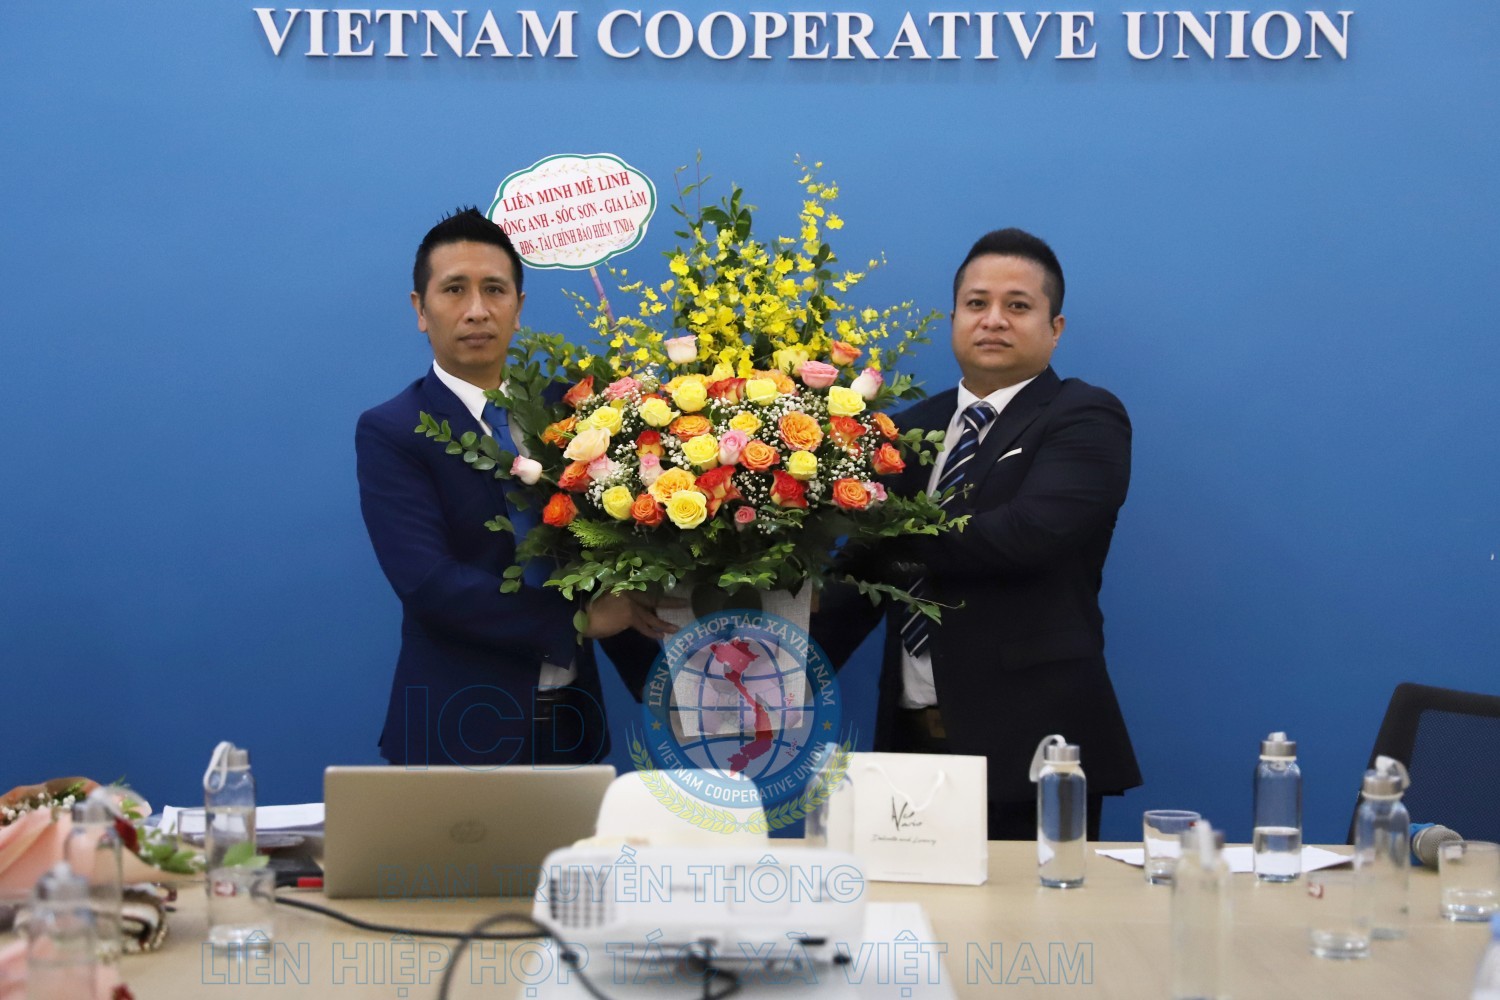 Liên hiệp Hợp tác xã Việt Nam, Liên hiệp Hợp tác xã OCOP Việt Nam tổ chức Lễ kỷ niệm 17 năm ngày Doanh nhân Việt Nam